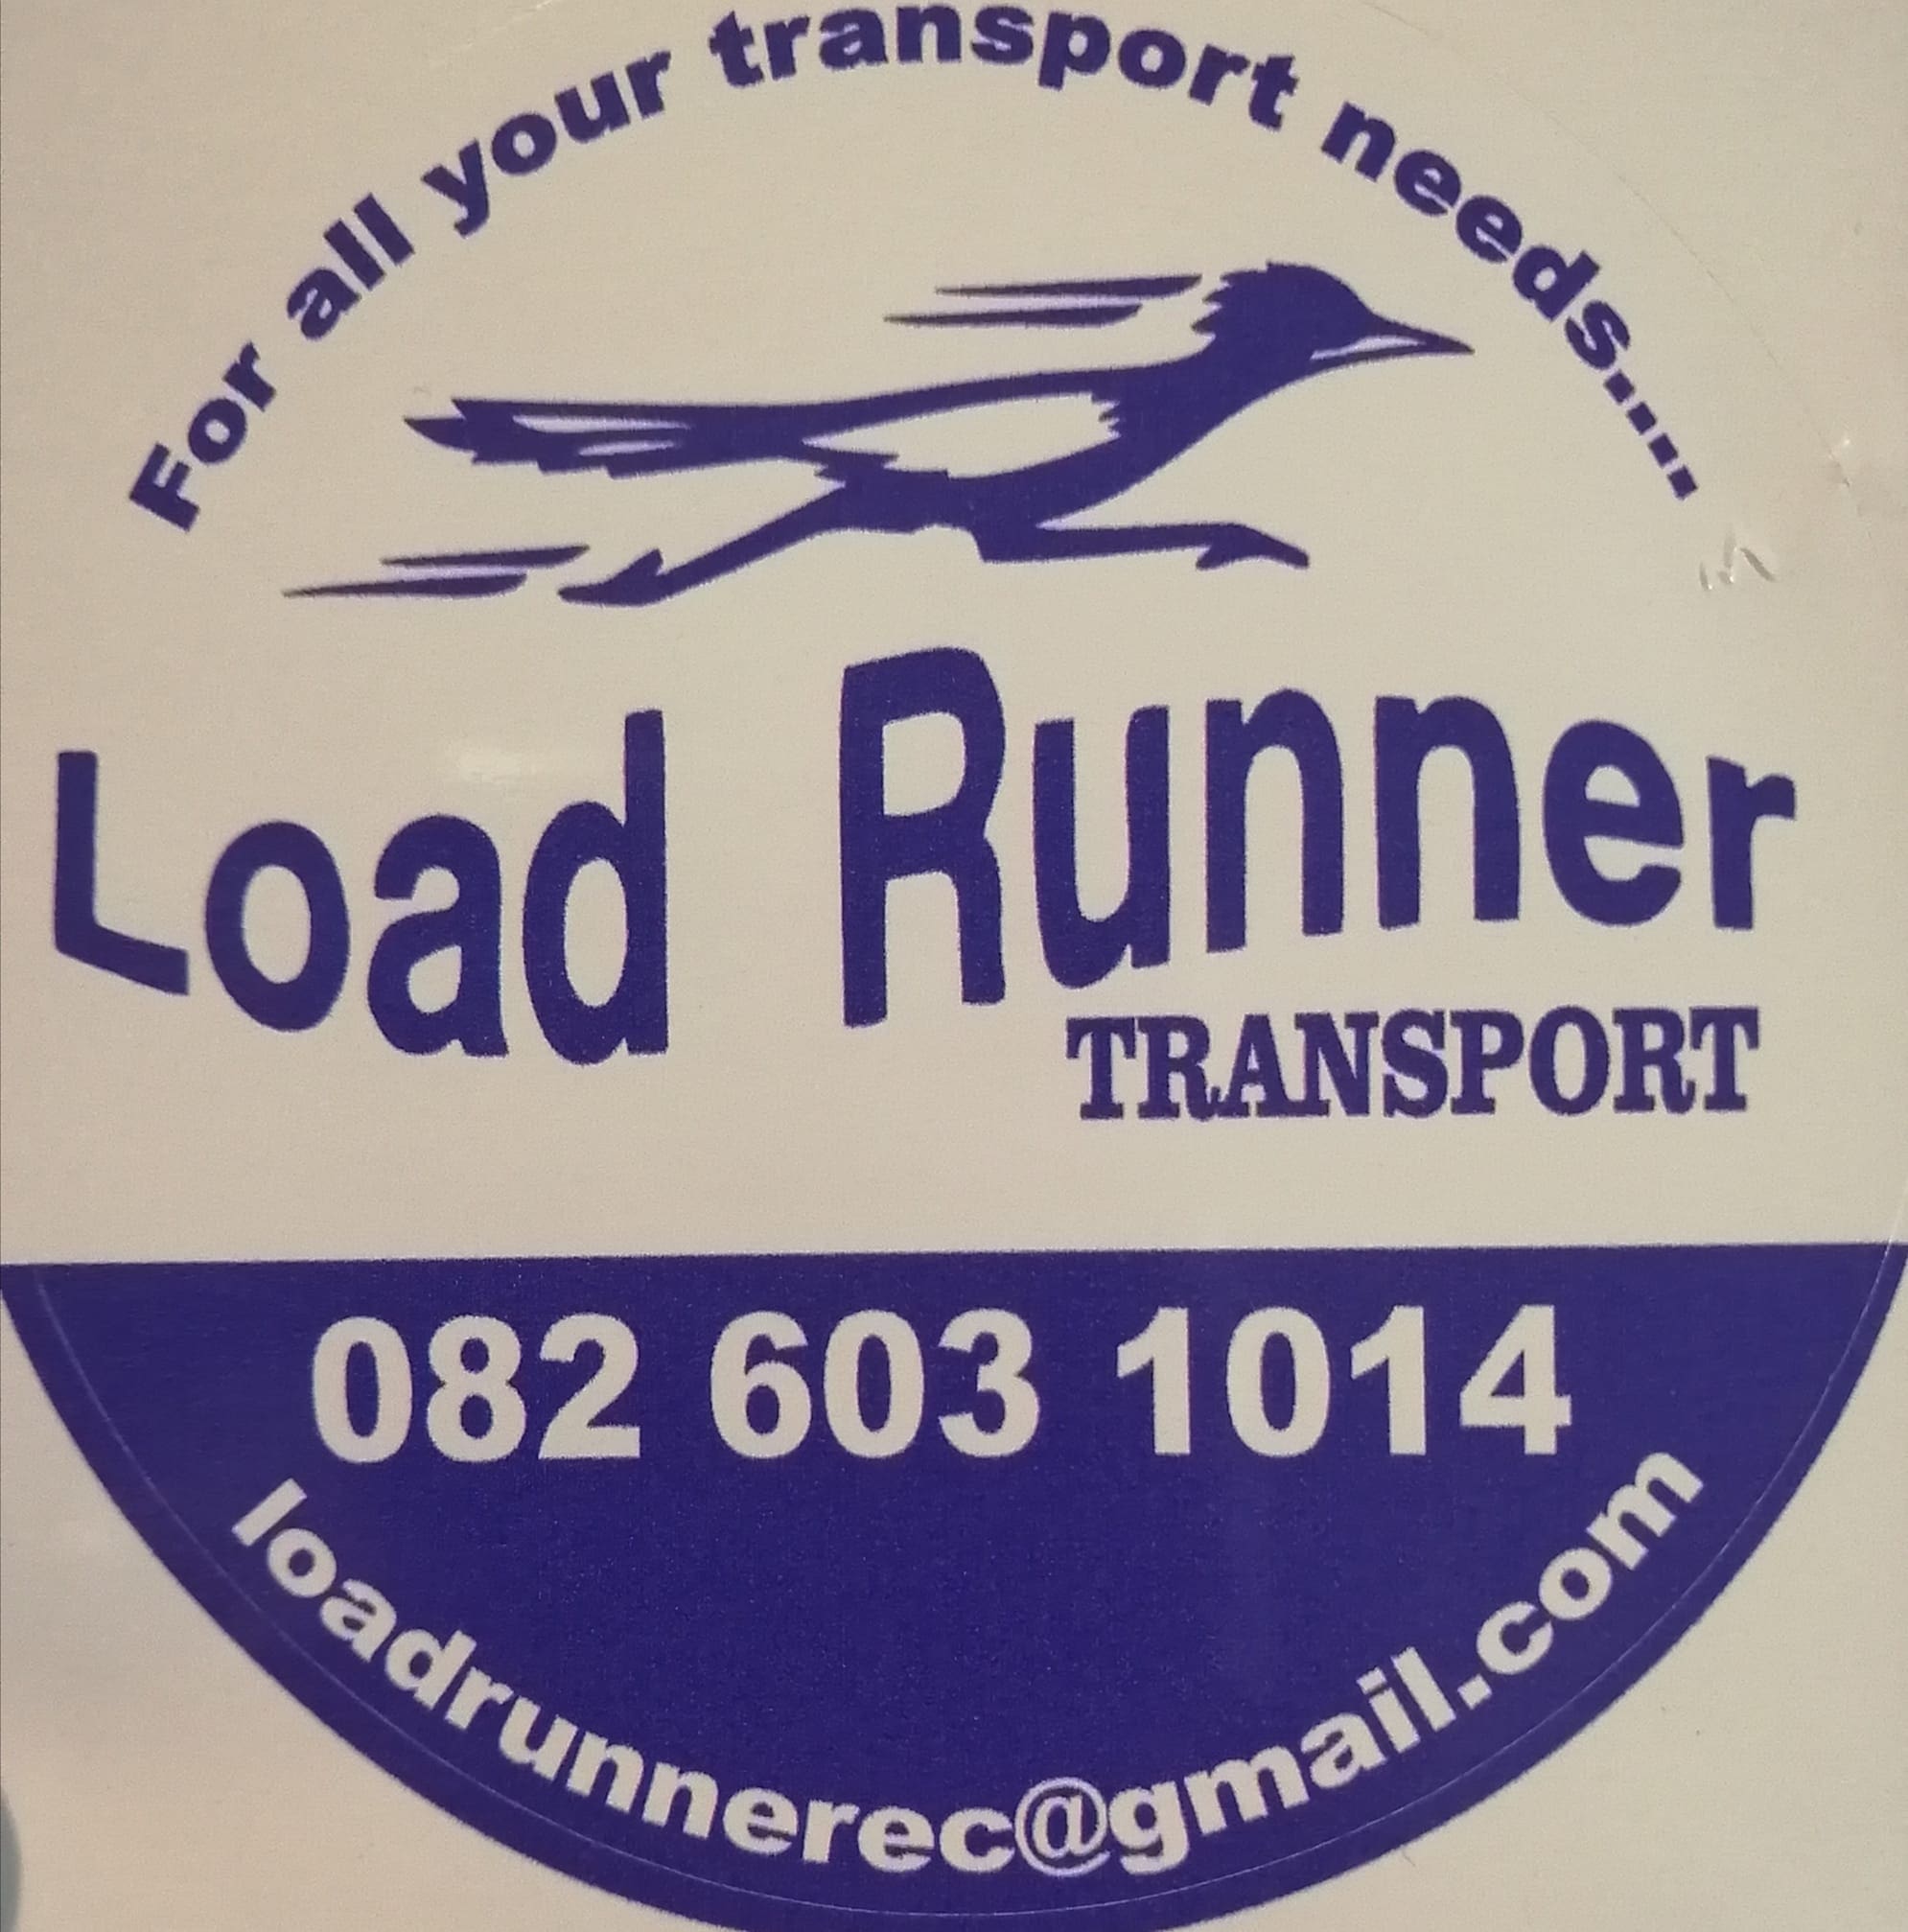 Load Runner Transport